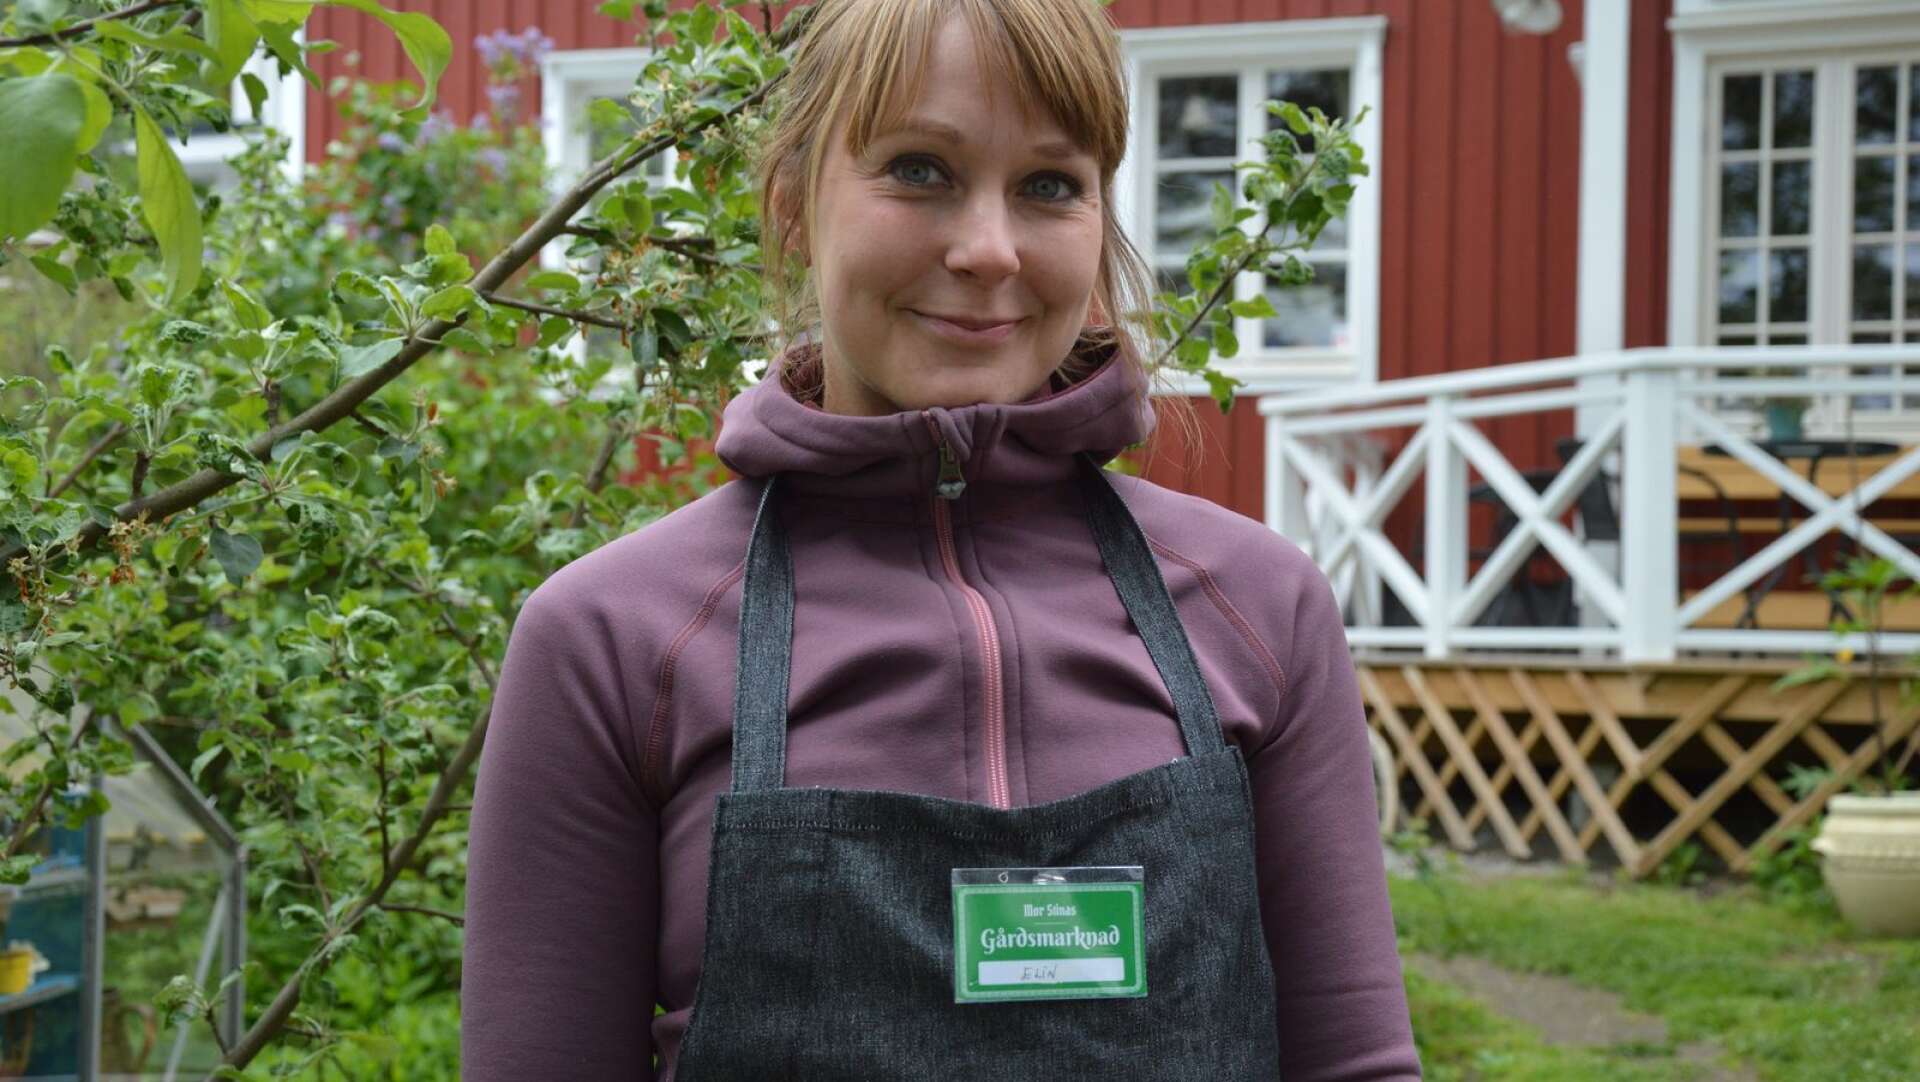 Elin Westerberg hjälper gärna till på gårdsmarknaden. I år stod hon som ansvarig vid grillen i sällskap av fruktträden.